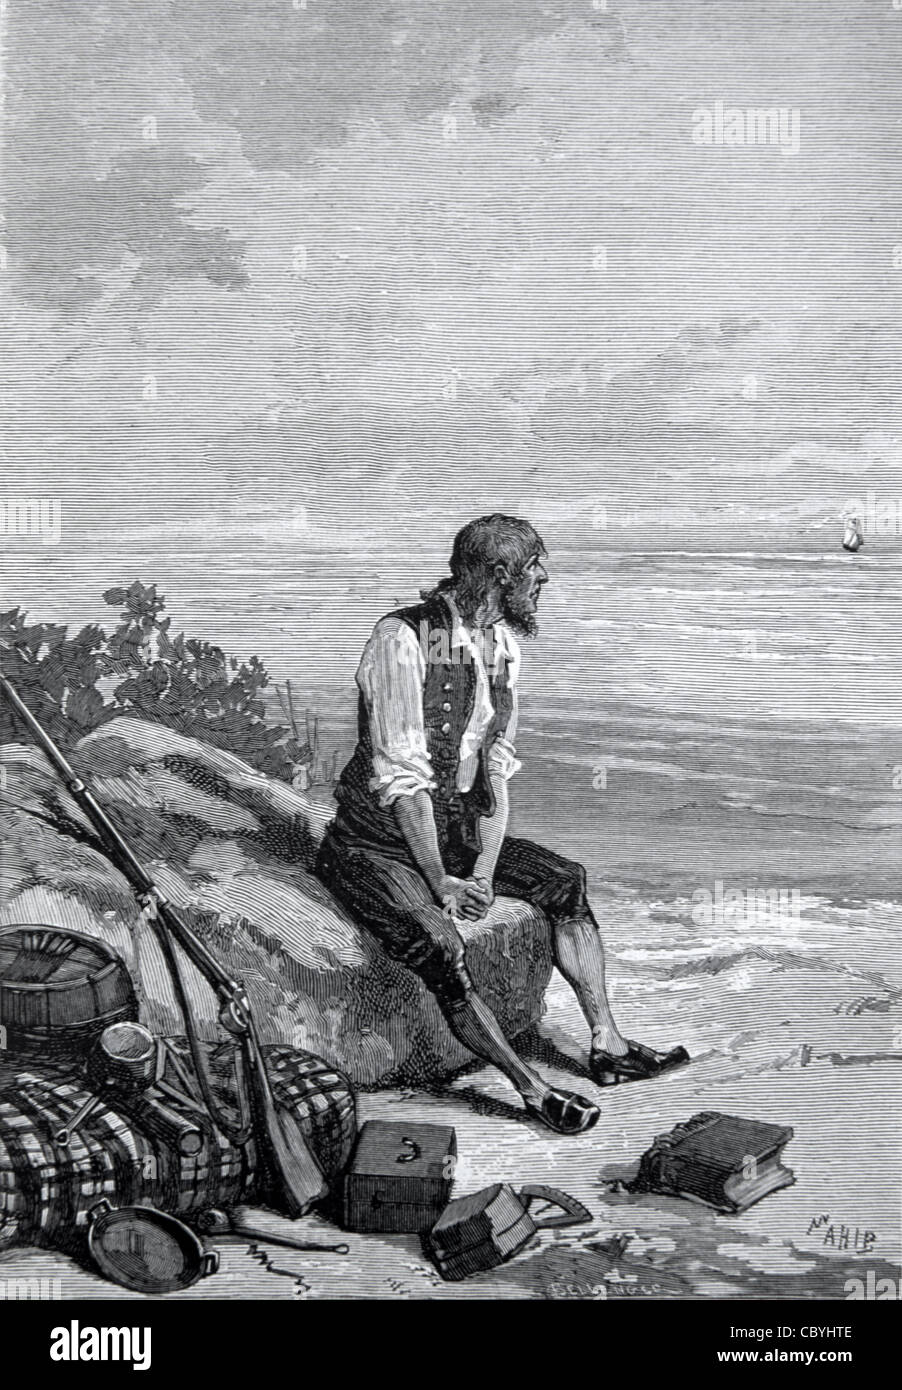 Alexander Selkirk (1676-1721), schottische Seemann und Castaway, die unbewohnte Insel gestrandet war. Modell für Robinson Crusoe. Stockfoto